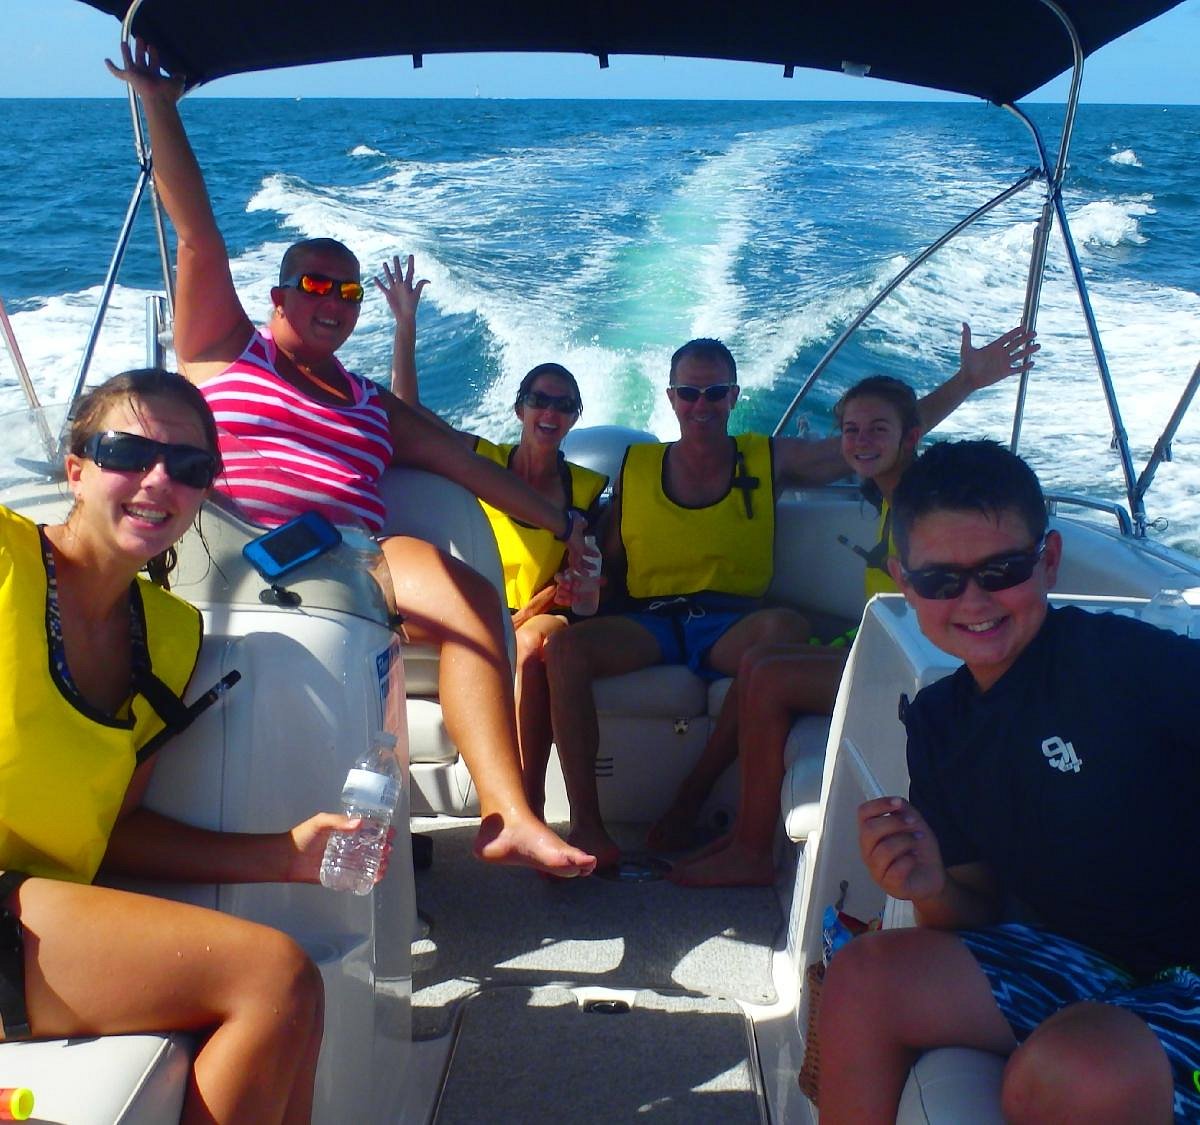 a family fun boat tour company photos